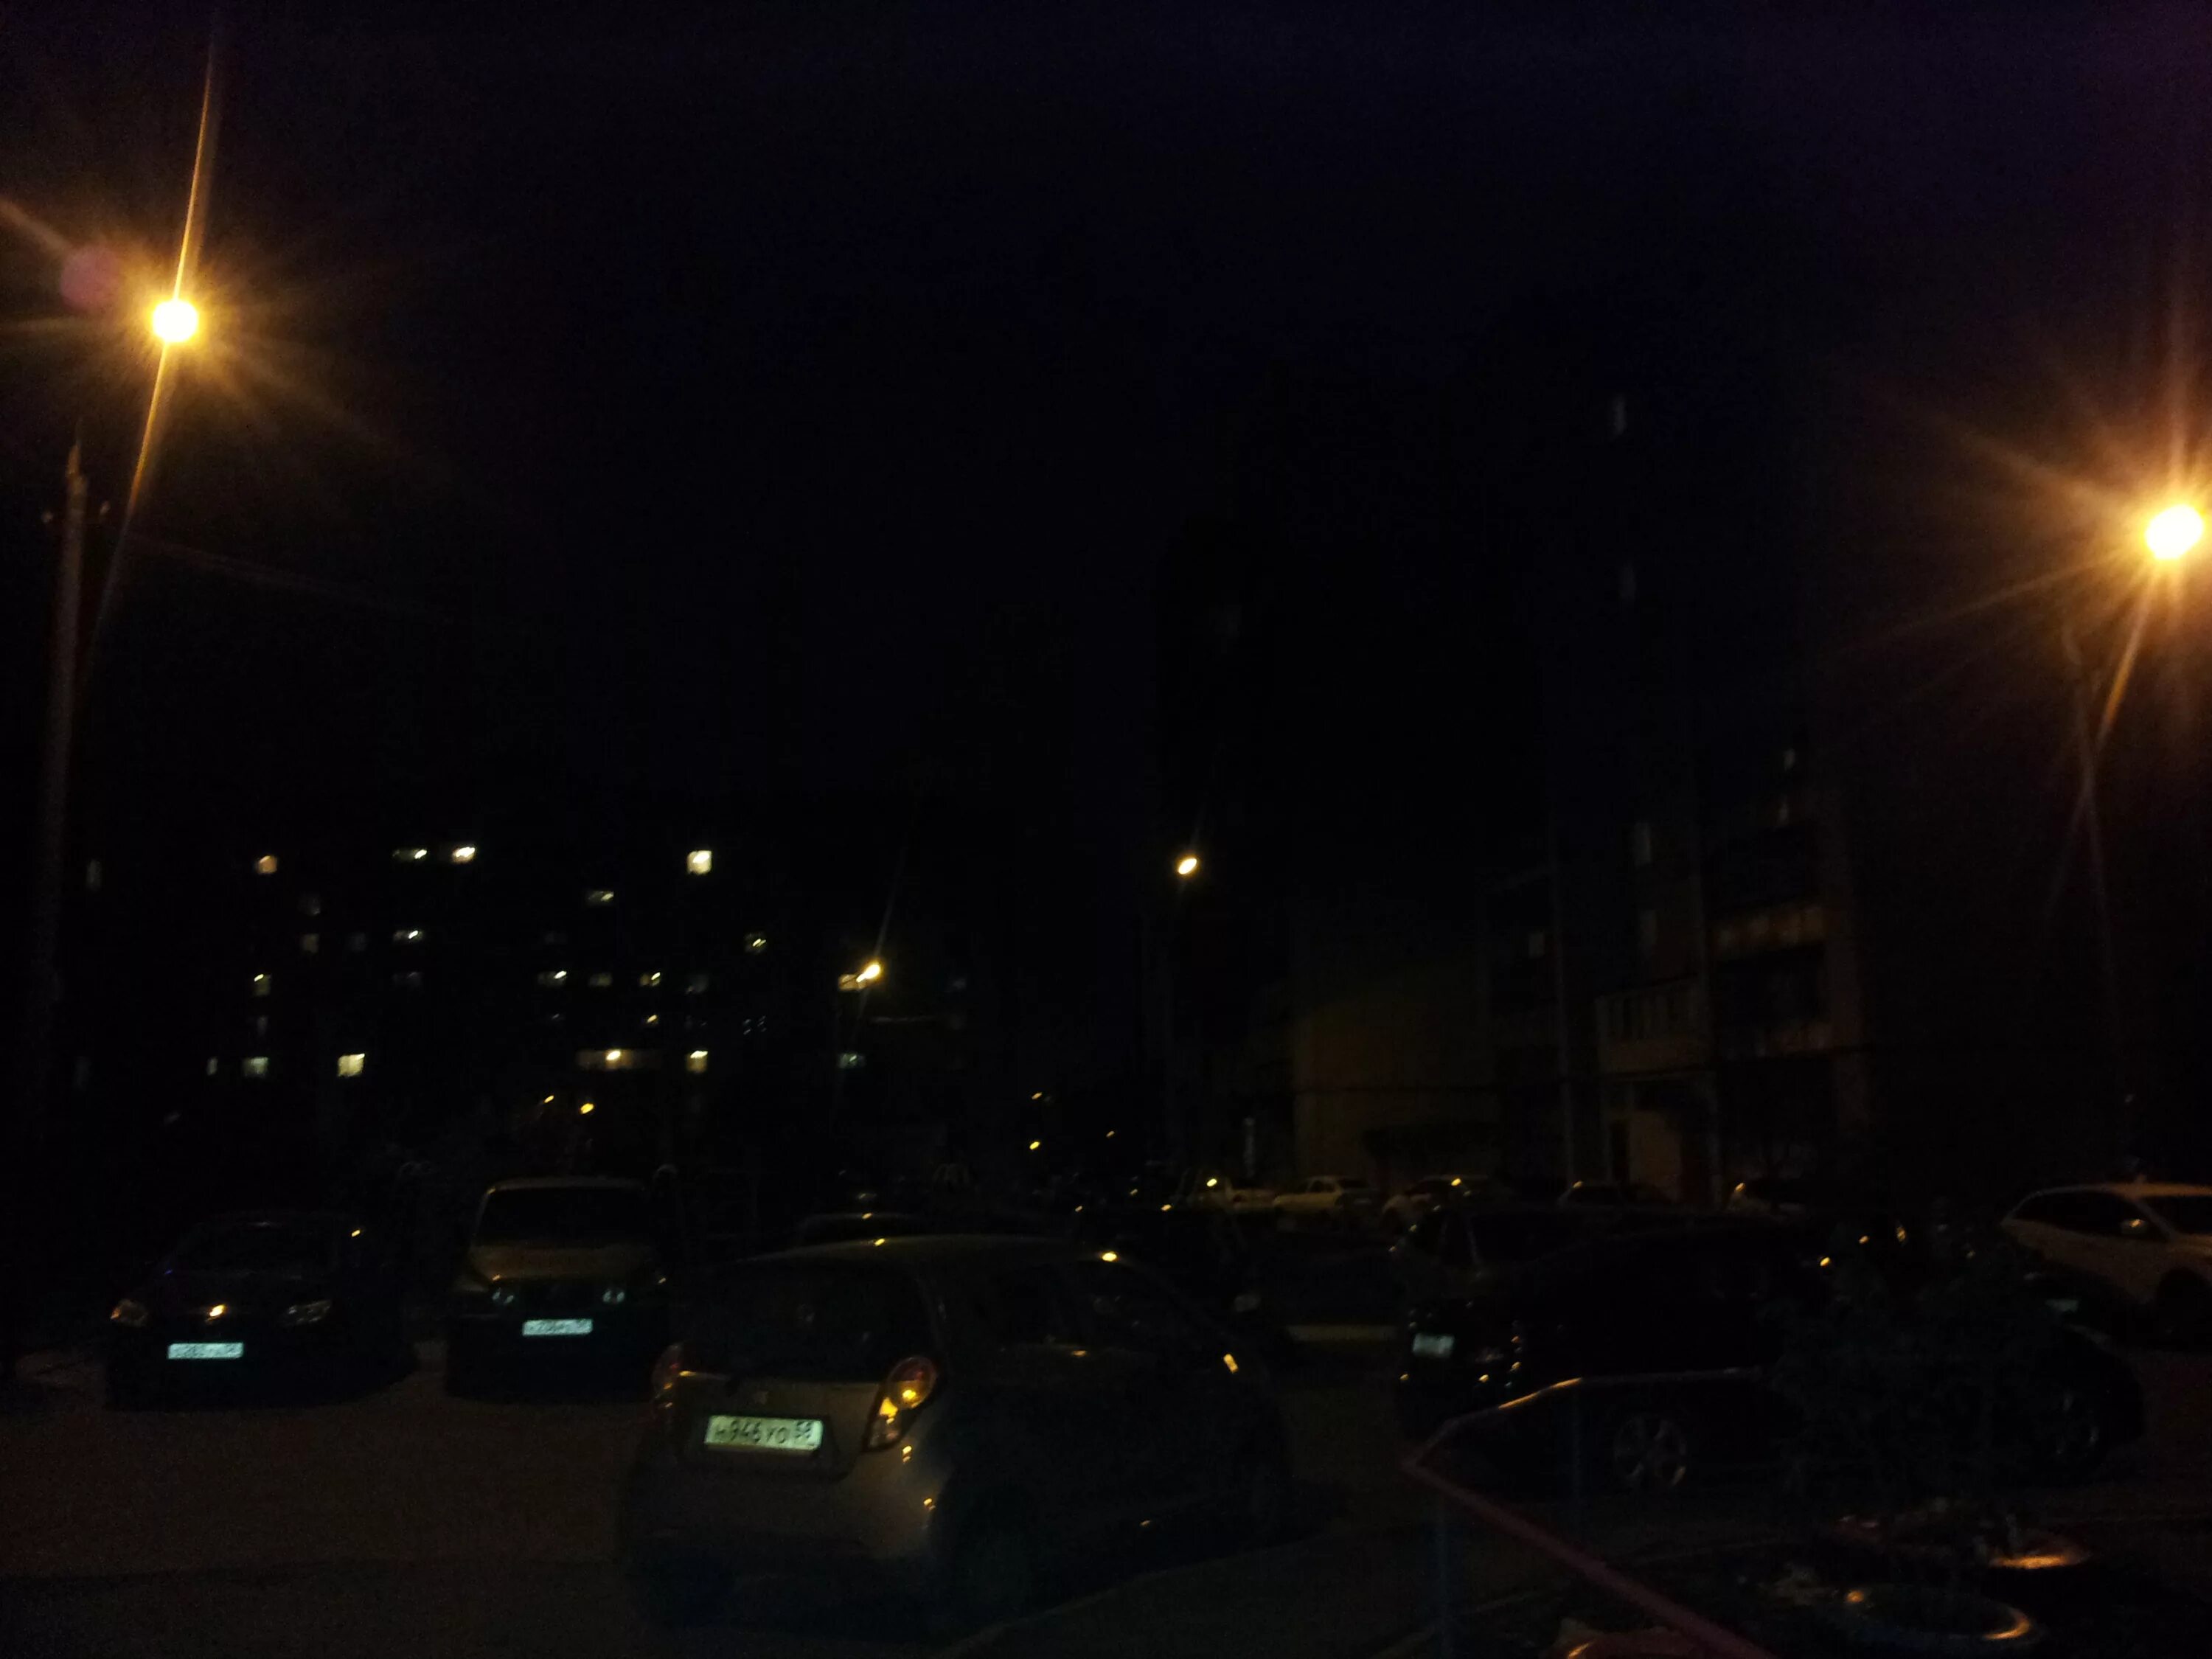 Многоквартирный дом ночью. Плохое освещение на улице. Ночная улица плохое качество. Ночной город плохое качество.